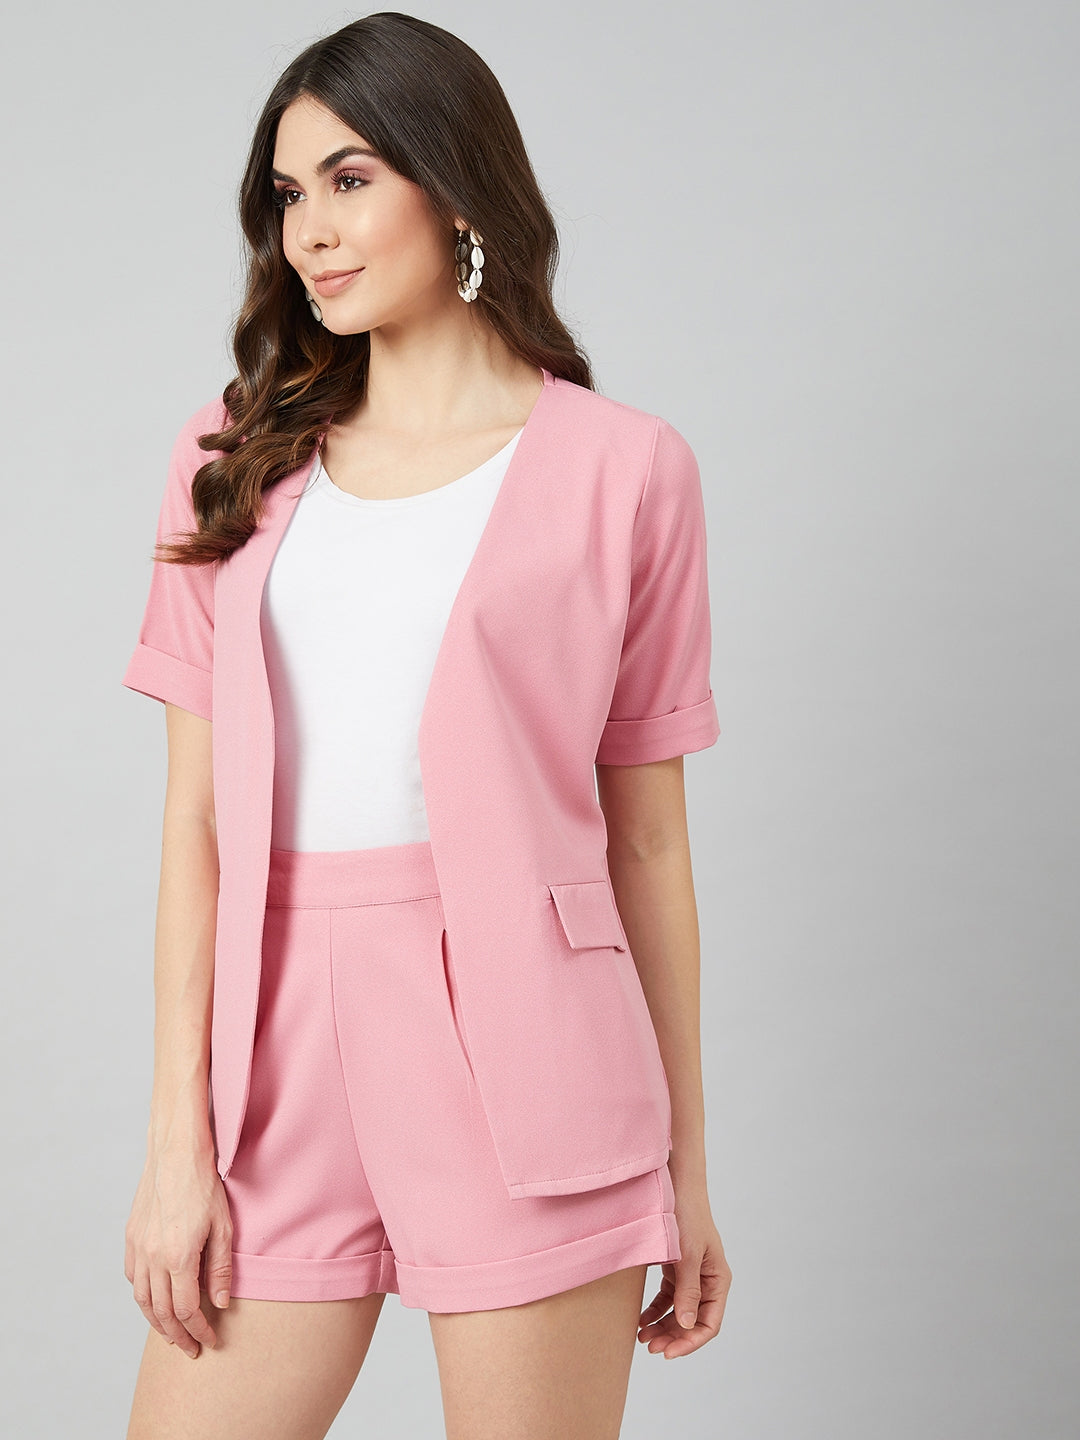 Athena Women Pink Solid Coat with Shorts - Athena Lifestyle